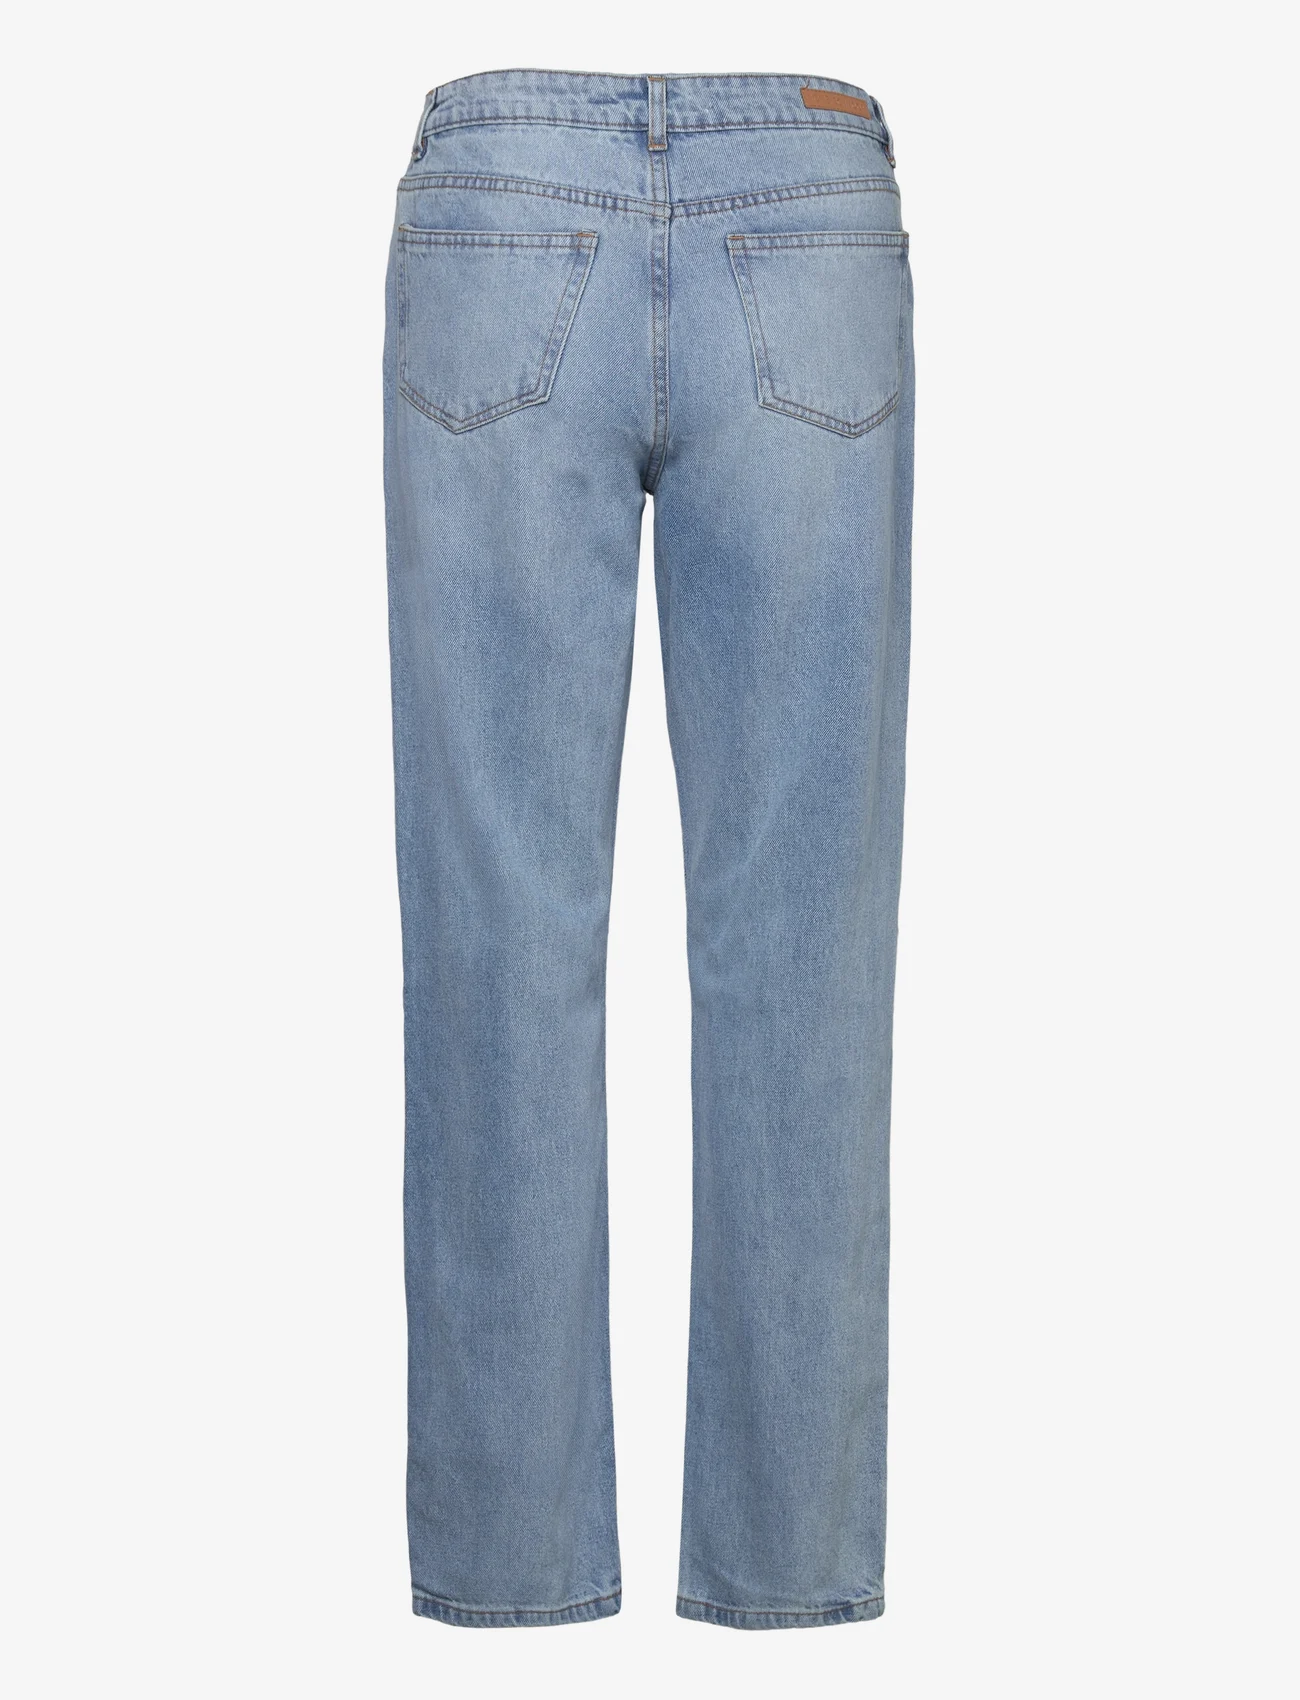 Sofie Schnoor - Jeans - straight jeans - denim blue - 1